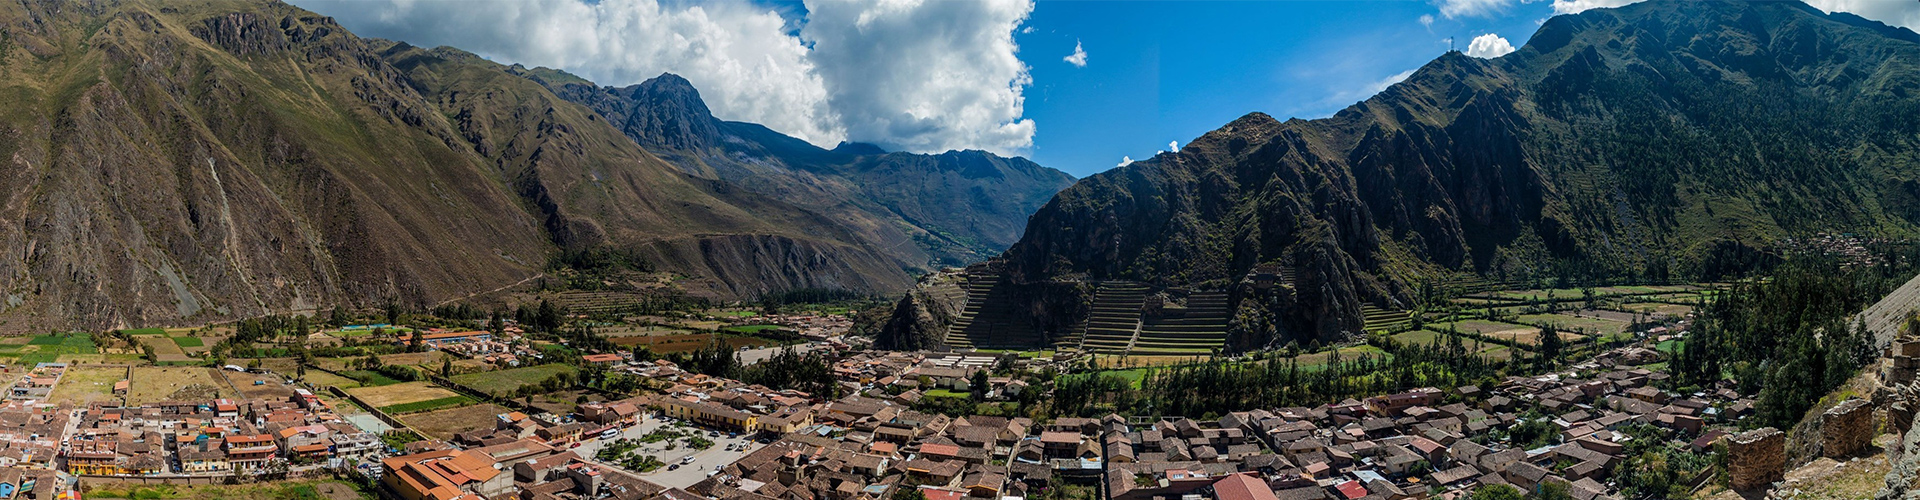 Peru: Bike, climb & hike